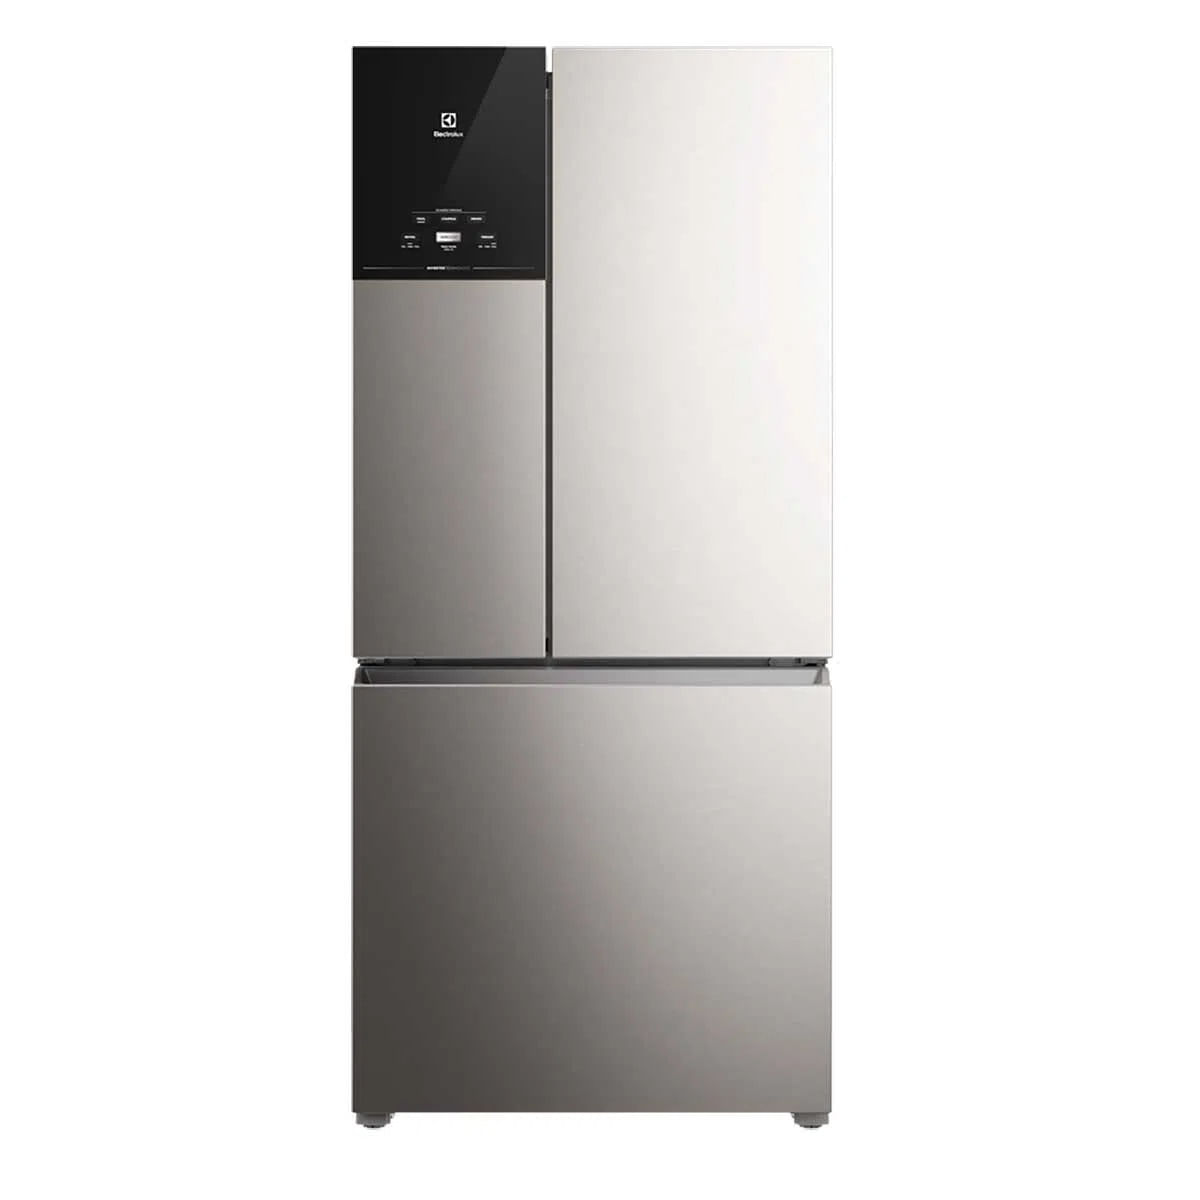 geladeira-electrolux-3-portas-inverter-com-autosense-efficient-im8s-ff3p-590l-x-110v-2.jpg